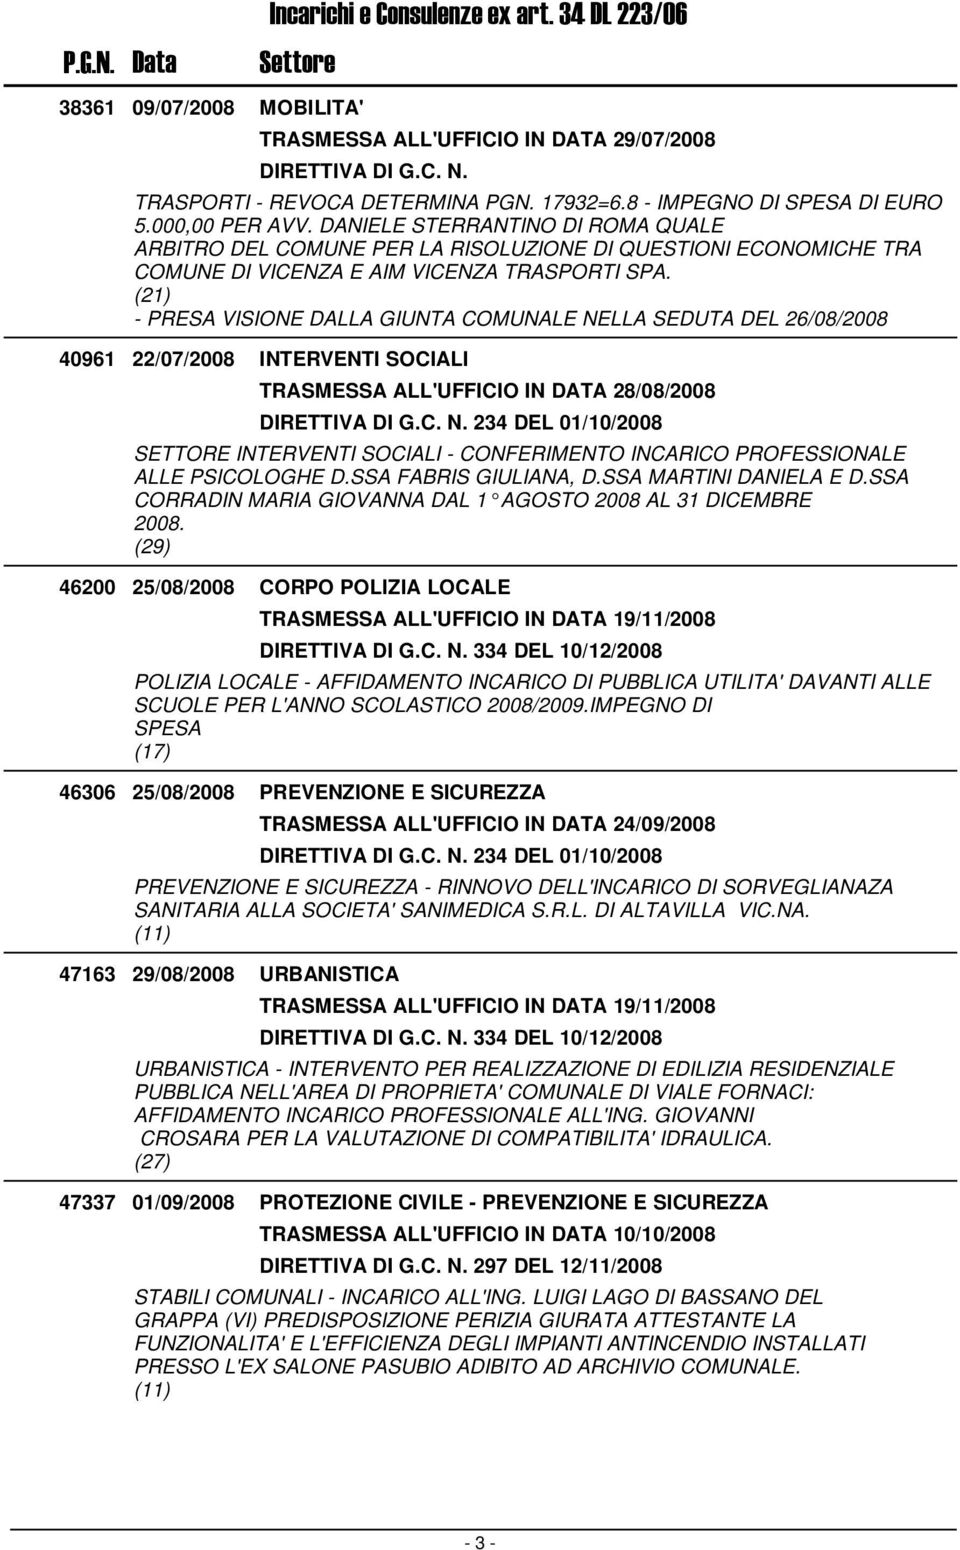 40961 22/07/2008 INTERVENTI SOCIALI TRASMESSA ALL'UFFICIO IN DATA 28/08/2008 234 DEL 01/10/2008 SETTORE INTERVENTI SOCIALI - CONFERIMENTO INCARICO PROFESSIONALE ALLE PSICOLOGHE D.